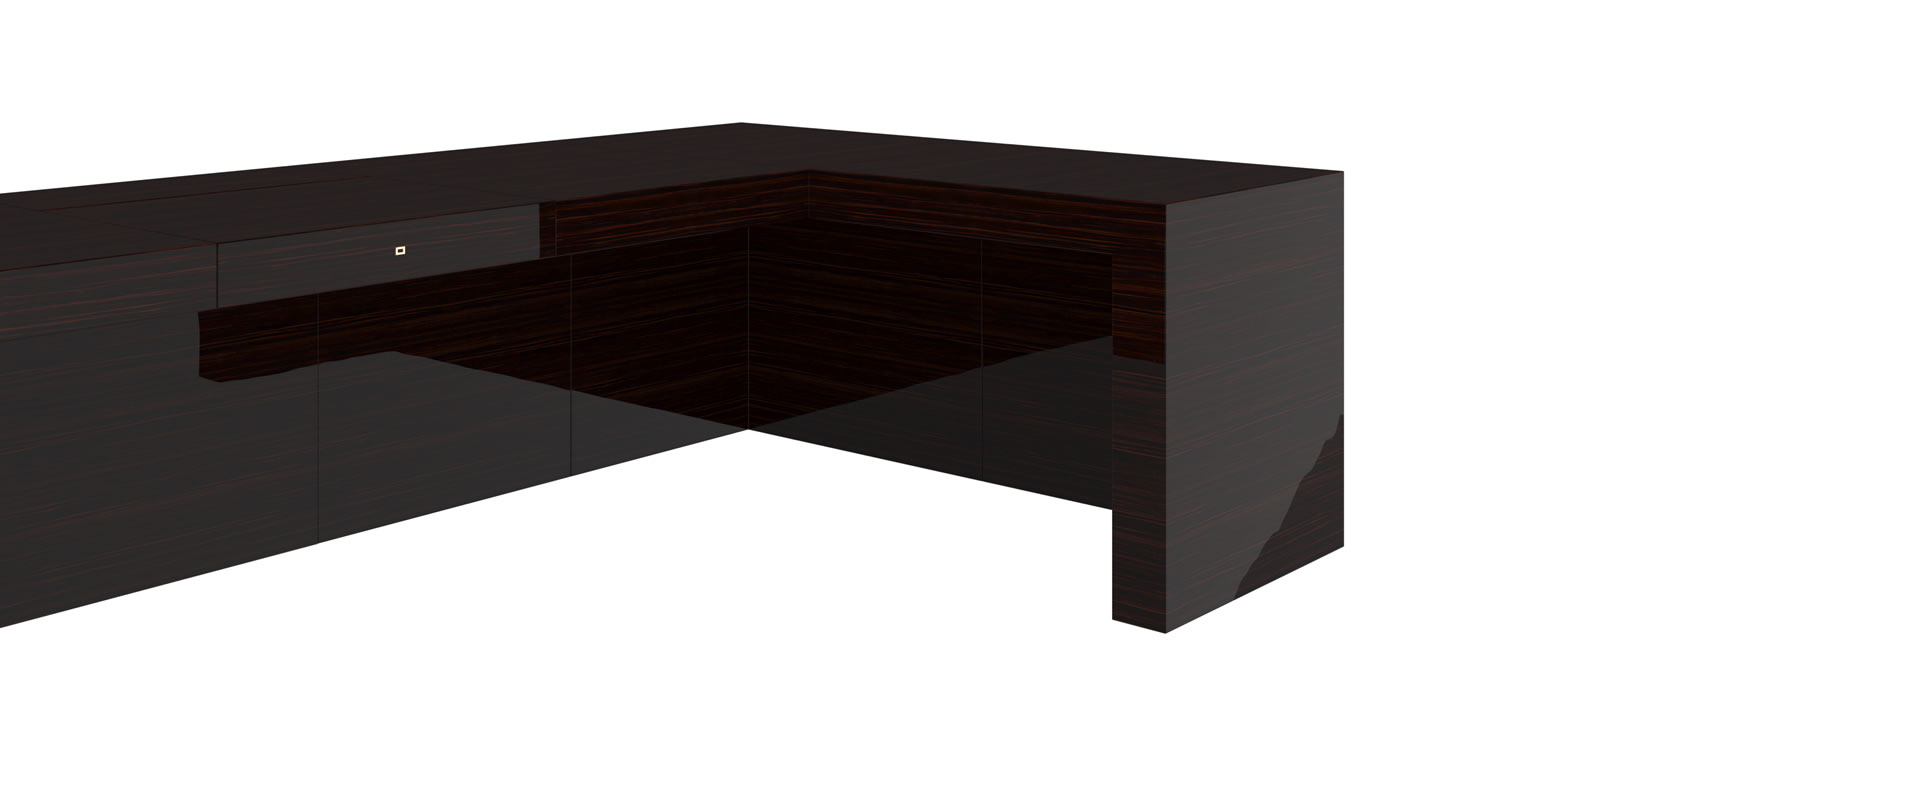 FELIX SCHWAKE DESK III precious wood macassar modern corner desk closed cube elemente